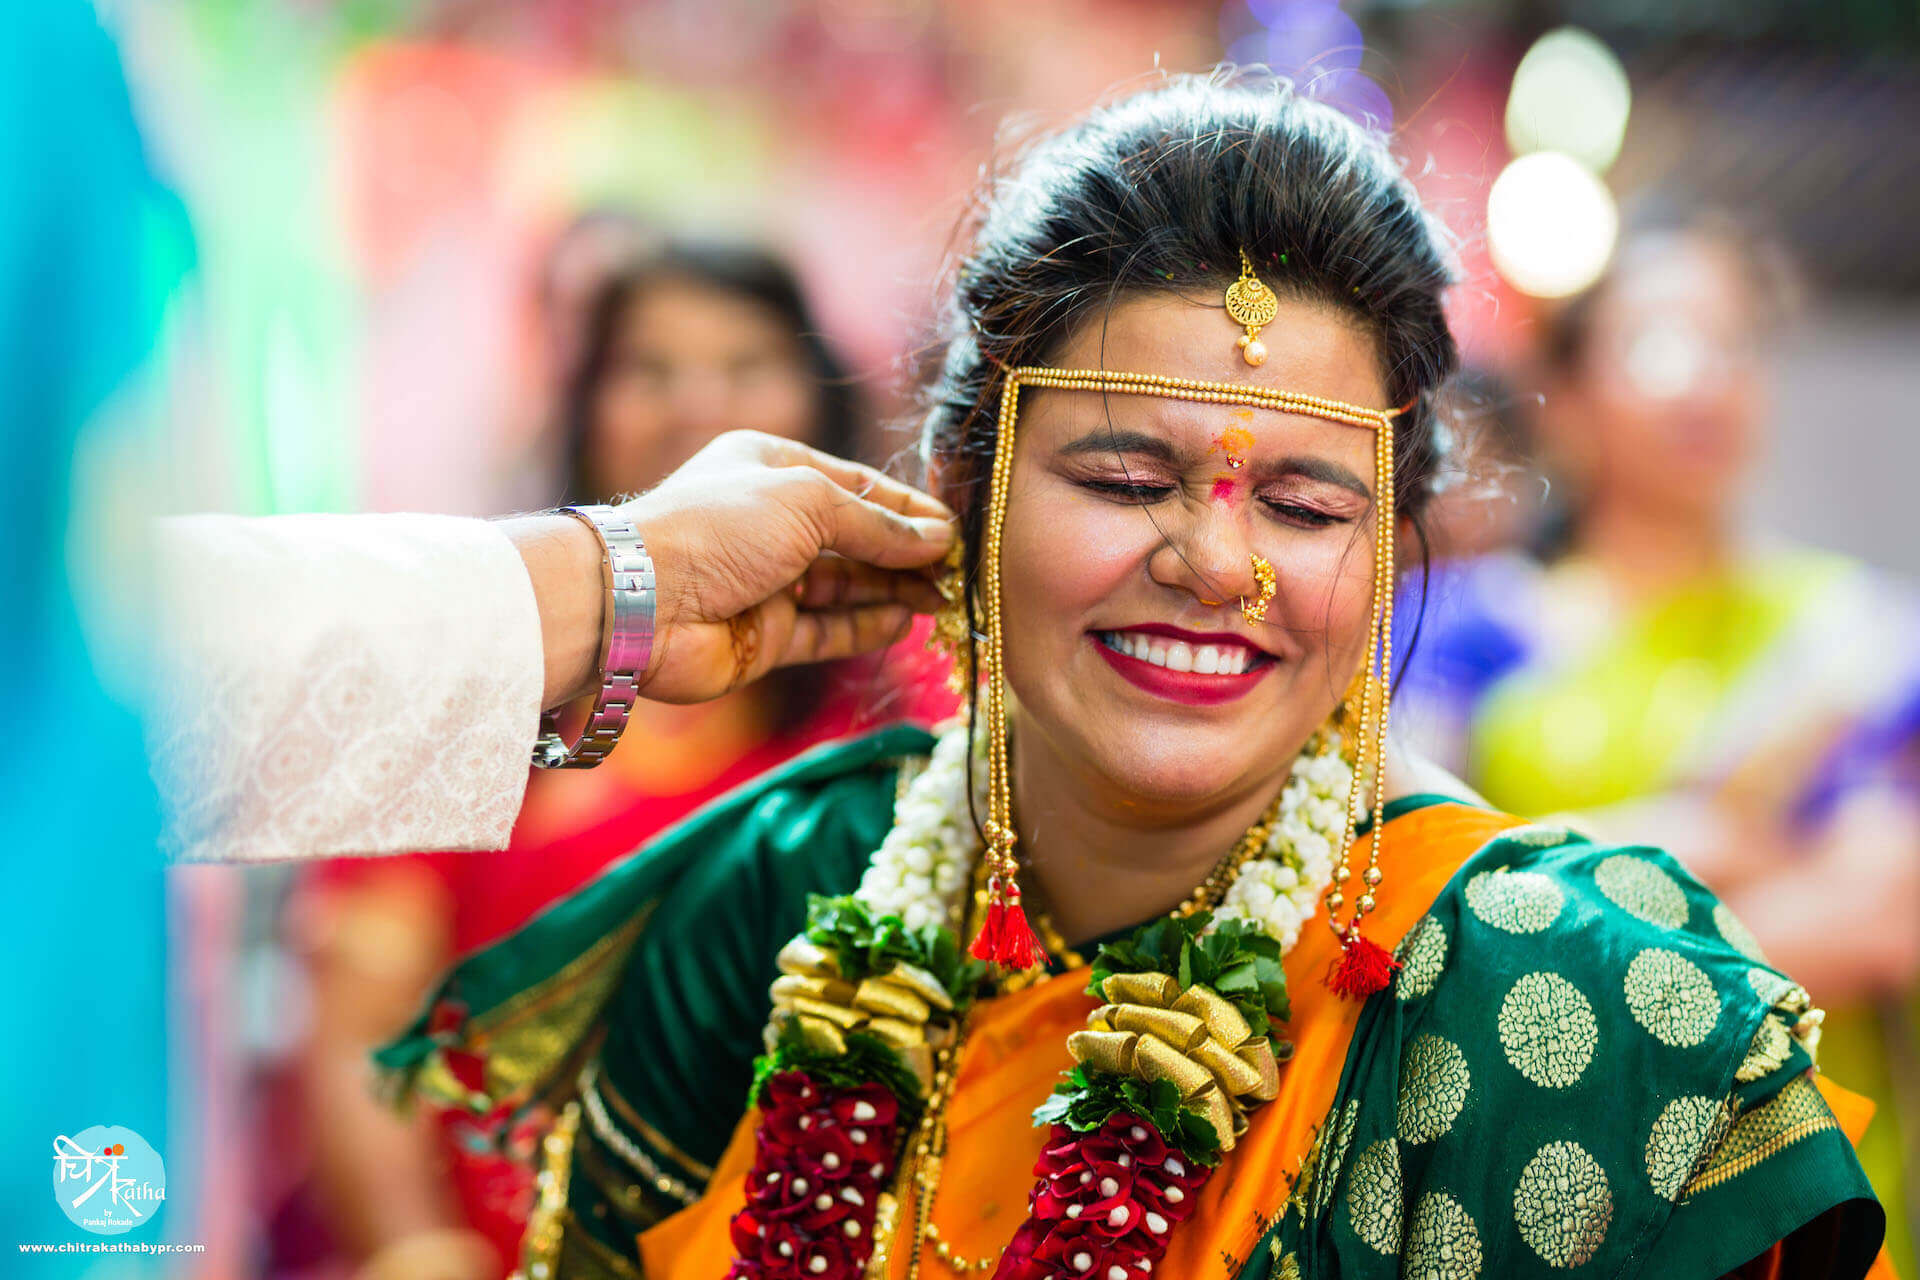 Wedding pose for marathi bride.